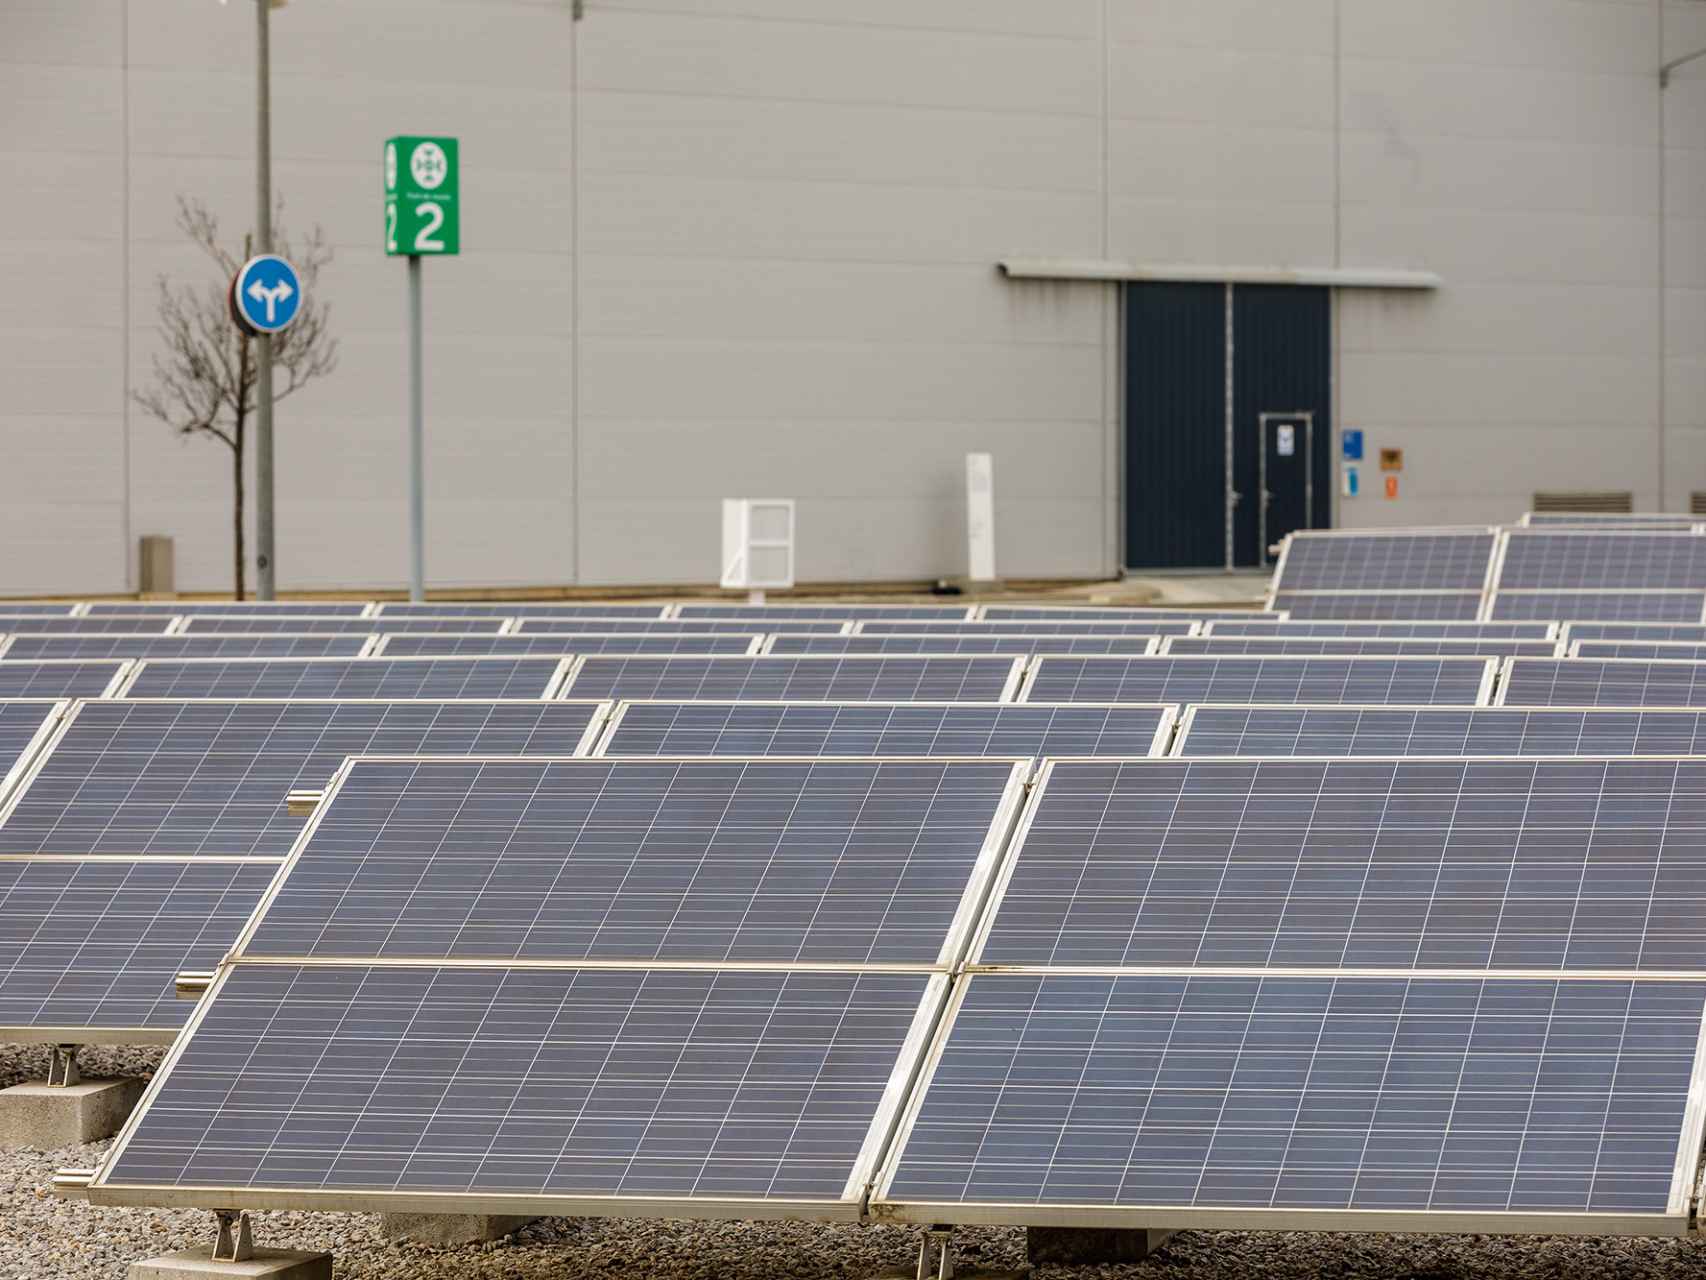 Aigües de Barcelona produce energía renovable fotovoltaica en sus instalaciones / AIGÜES DE BARCELONA